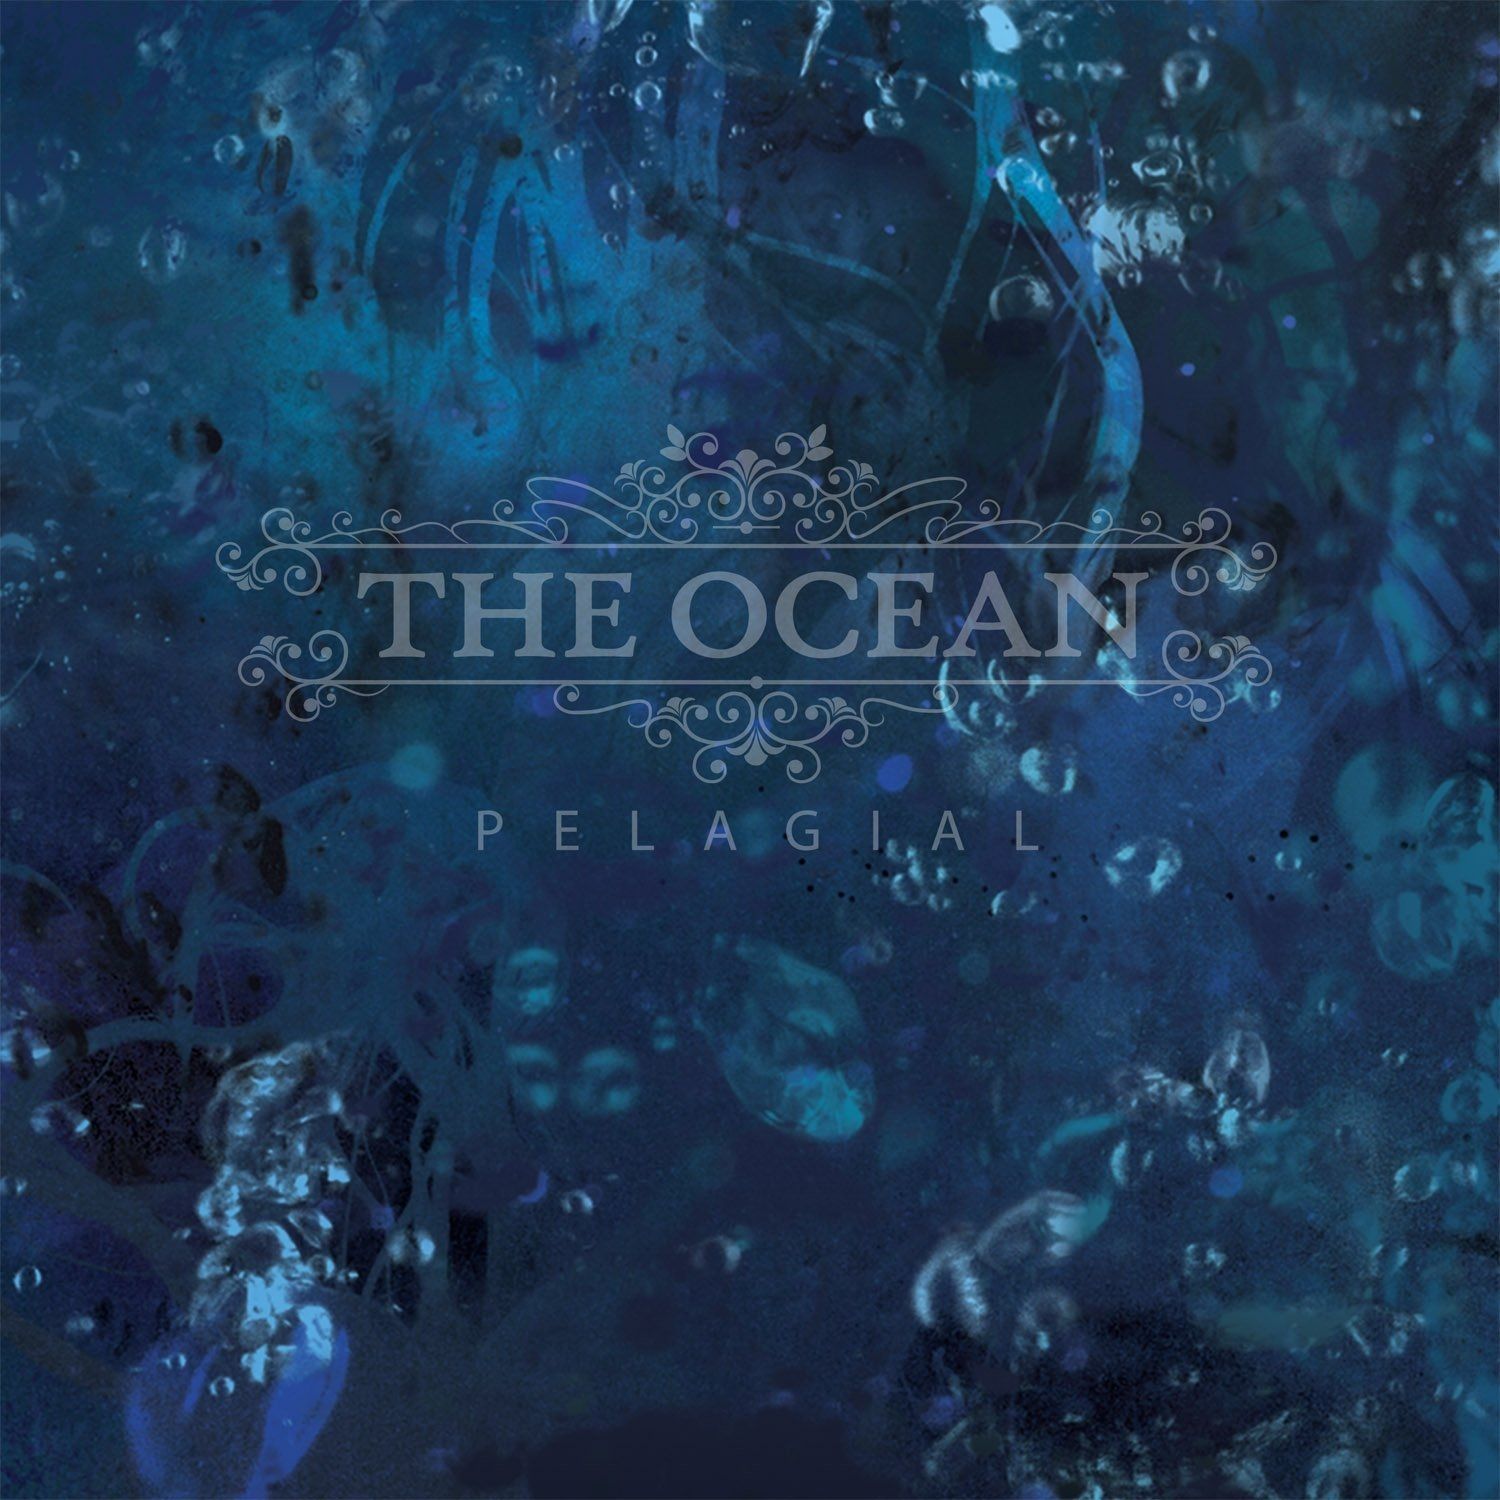 Imagem do álbum Pelagial do(a) artista The Ocean